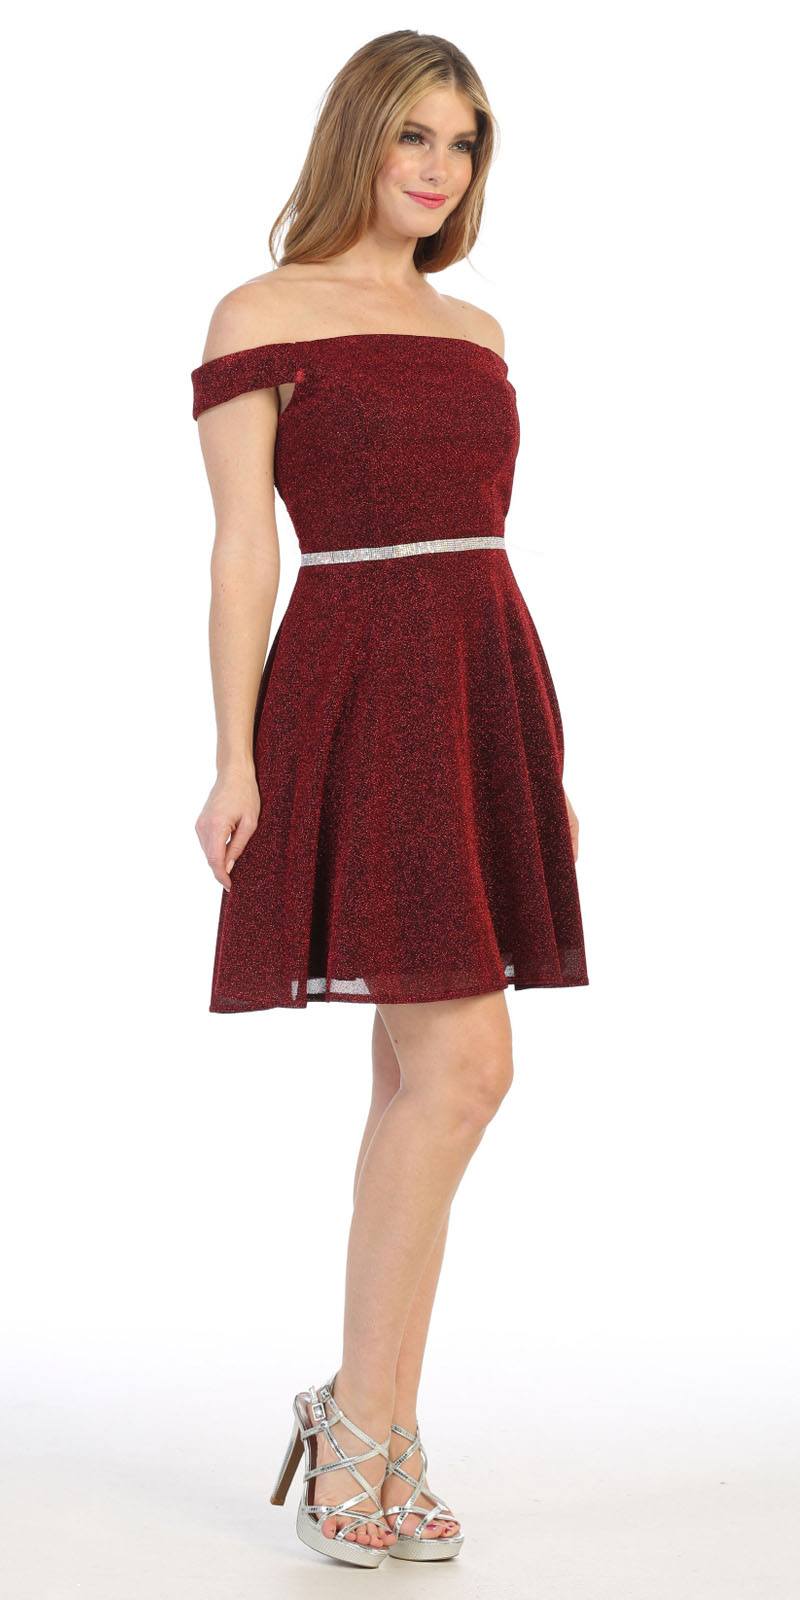 Burgundy Off-Shoulder Homecoming Short Dress